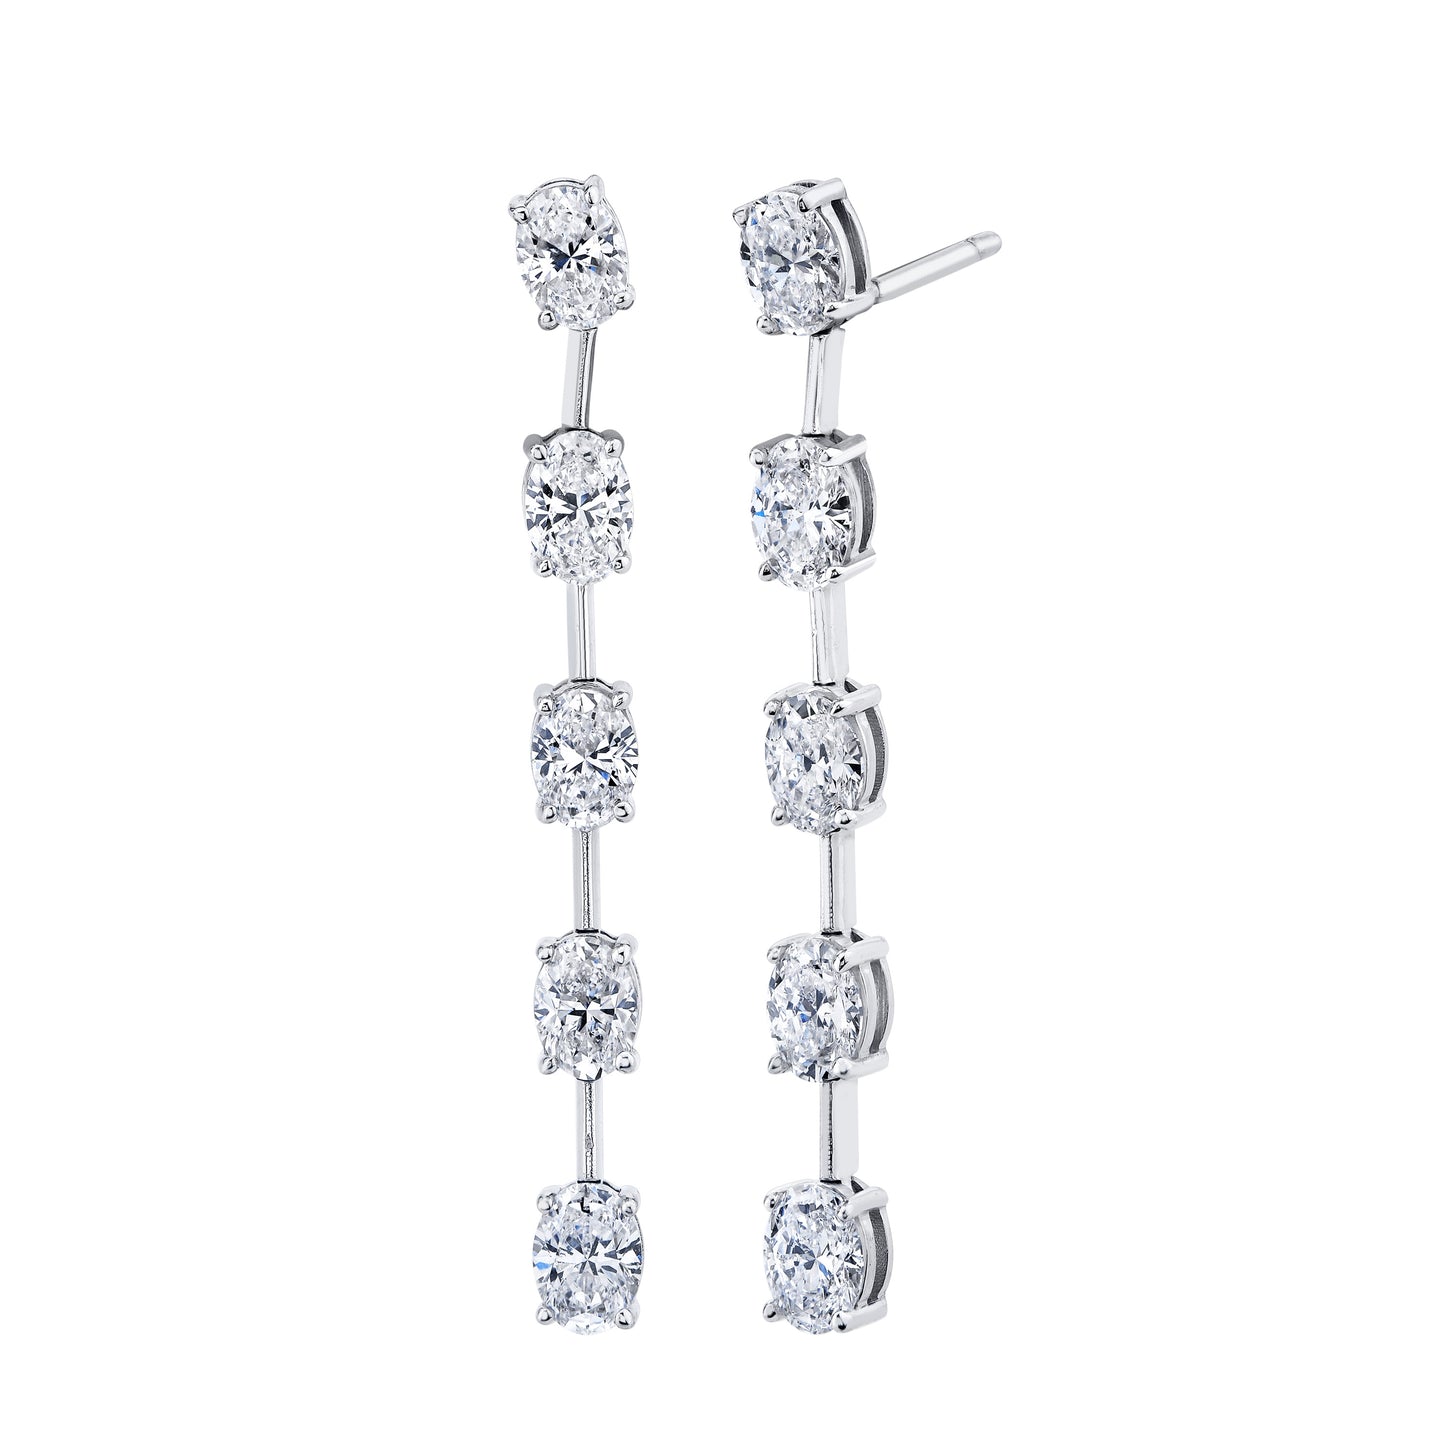 Linear Dangle Earrings with Oval Cut Diamonds